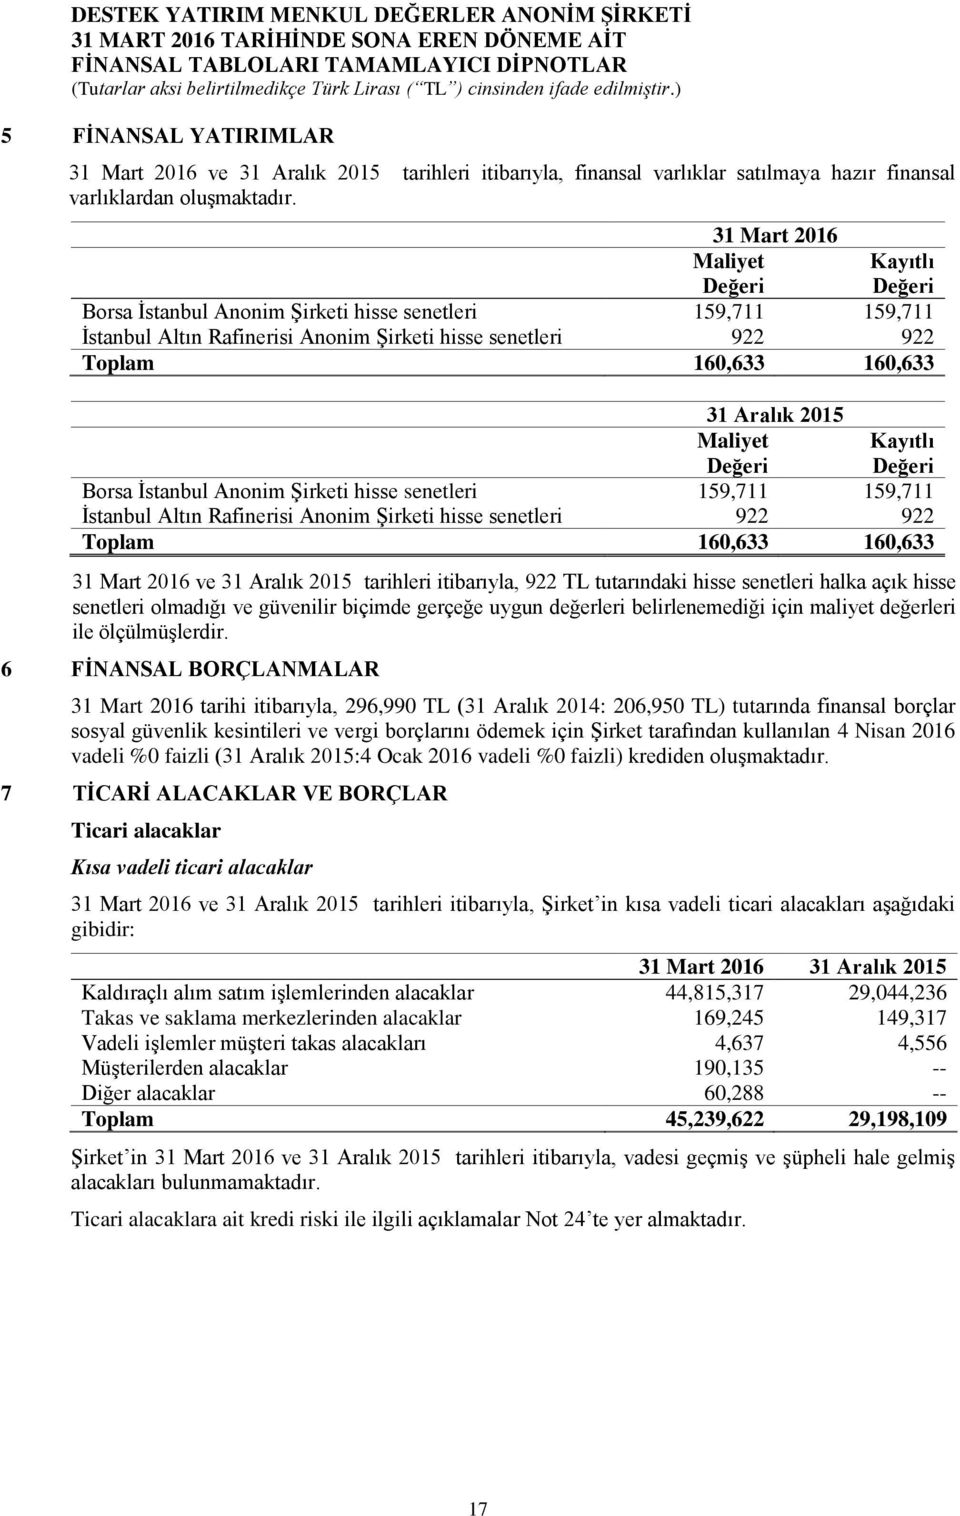 Aralık 2015 Maliyet Değeri Kayıtlı Değeri Borsa İstanbul Anonim Şirketi hisse senetleri 159,711 159,711 İstanbul Altın Rafinerisi Anonim Şirketi hisse senetleri 922 922 Toplam 160,633 160,633 31 Mart